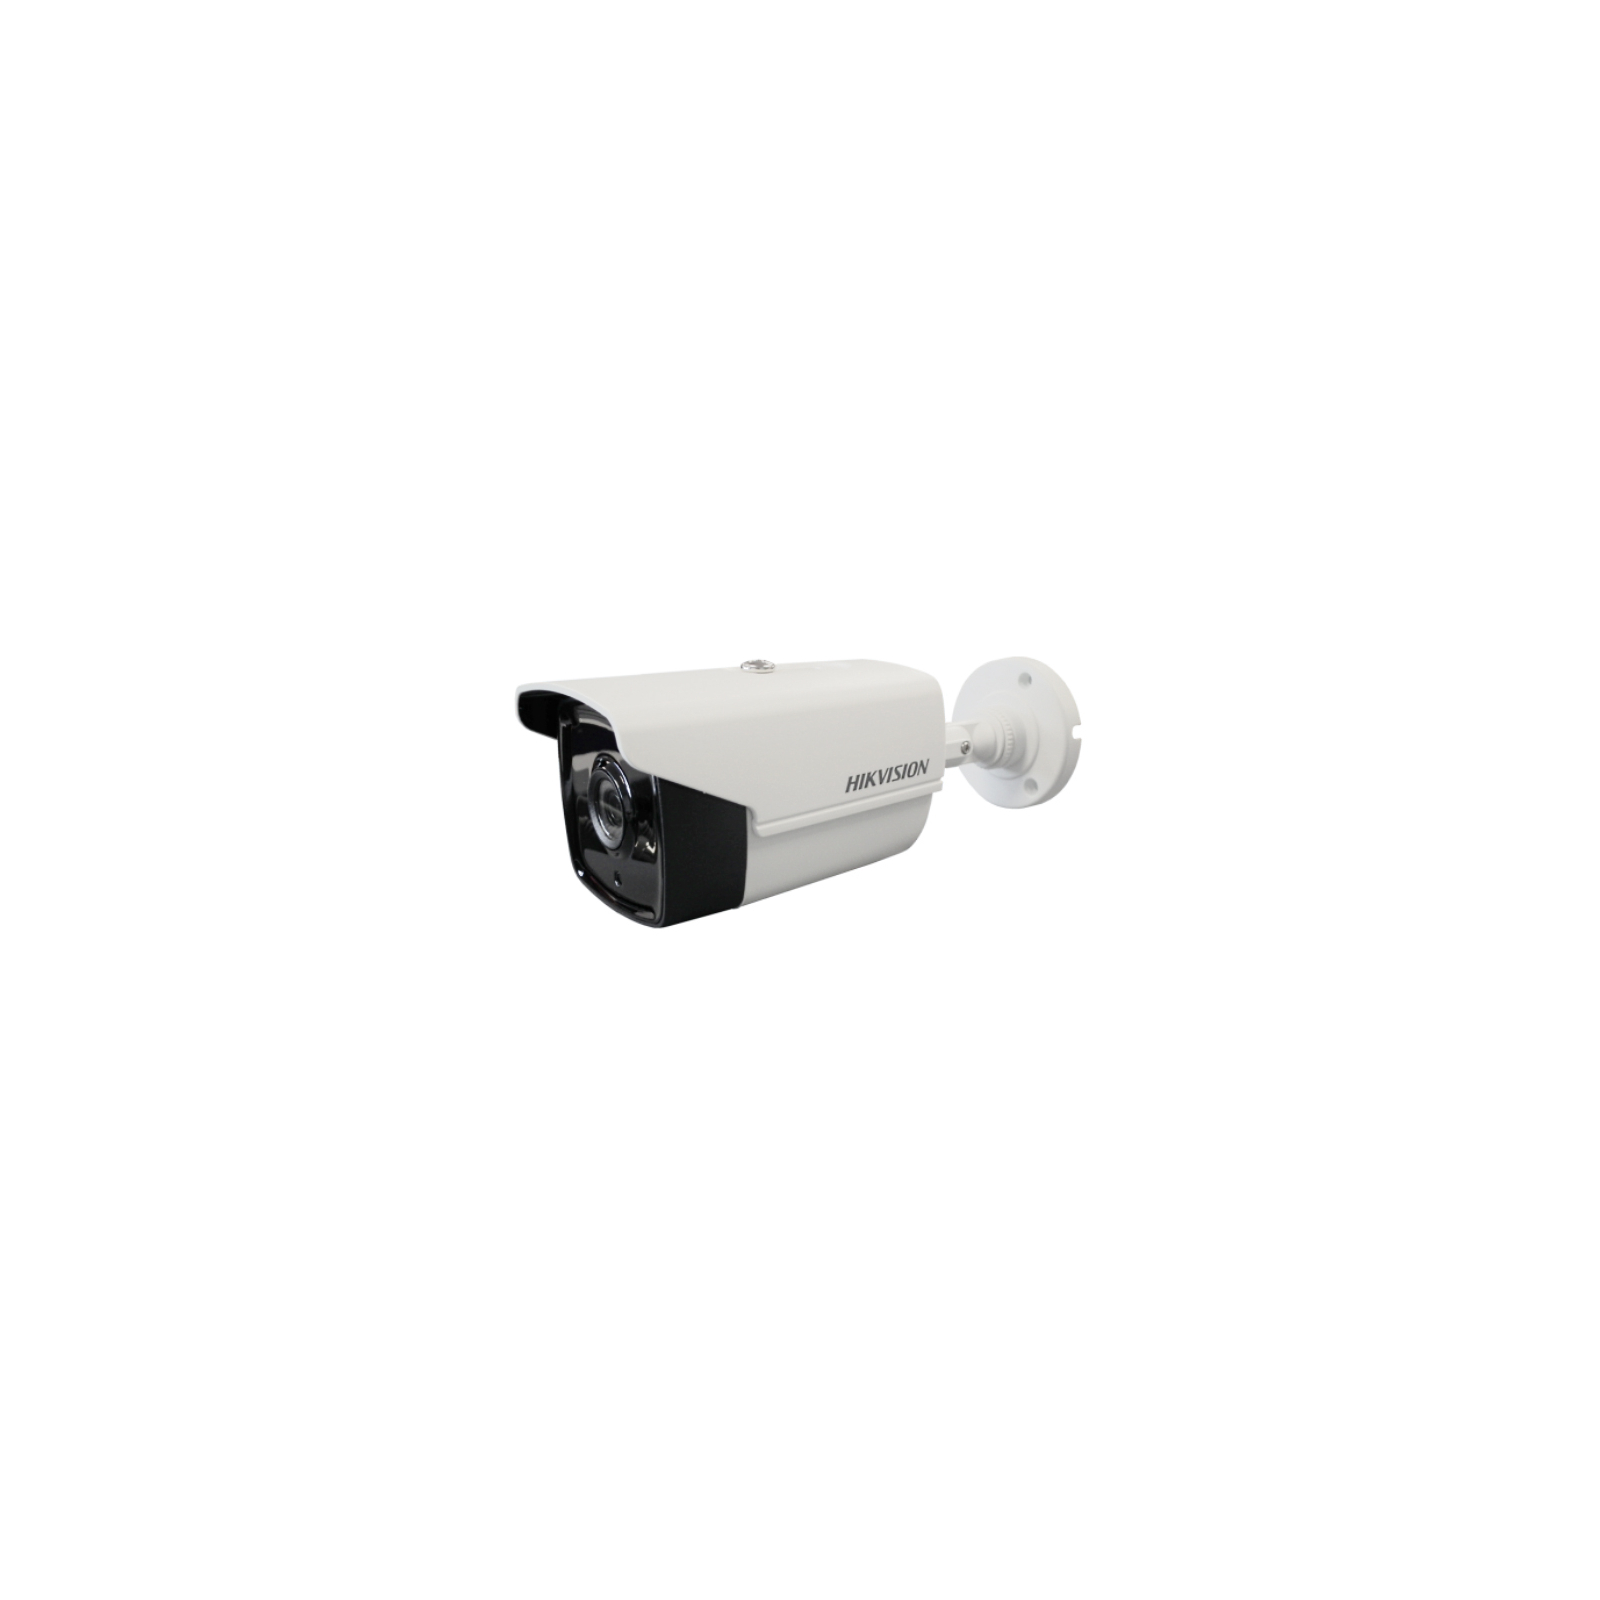 Камера видеонаблюдения Hikvision DS-2CE16F7T-IT3Z (2.8-12)